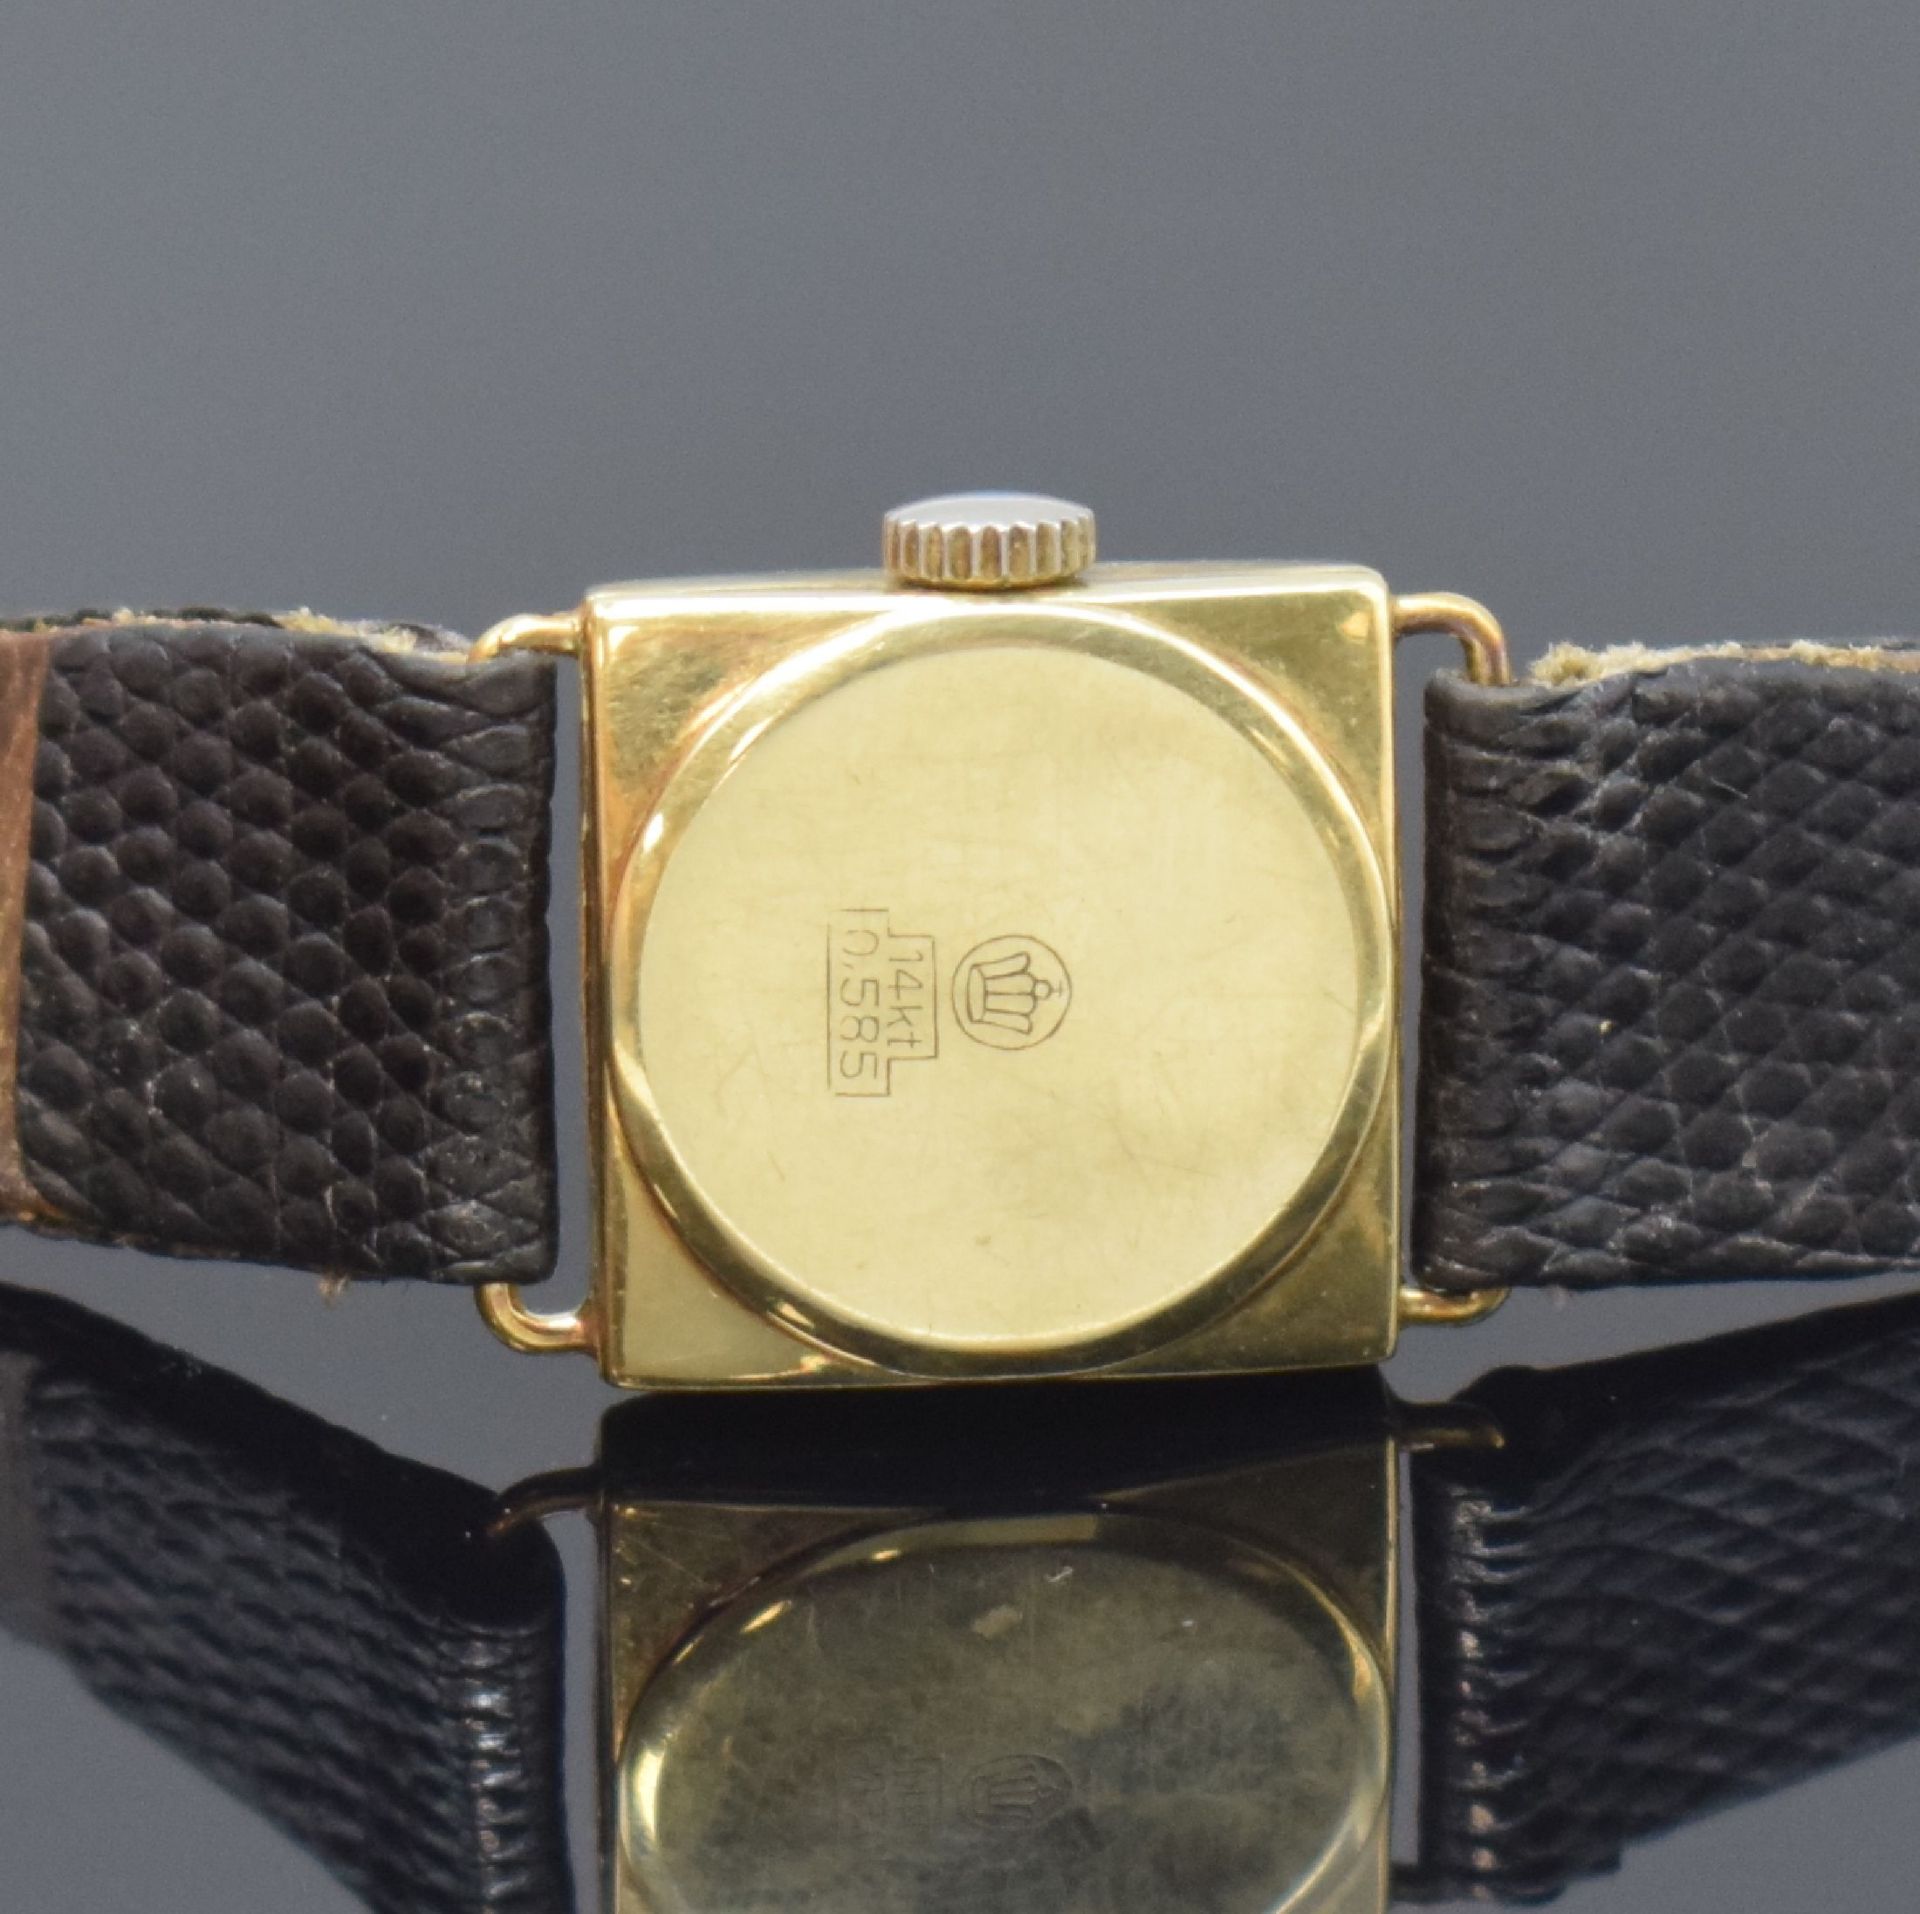 GLYCINE und DUCADO 2 Damenarmbanduhren in 925er Silber und - Bild 6 aus 6